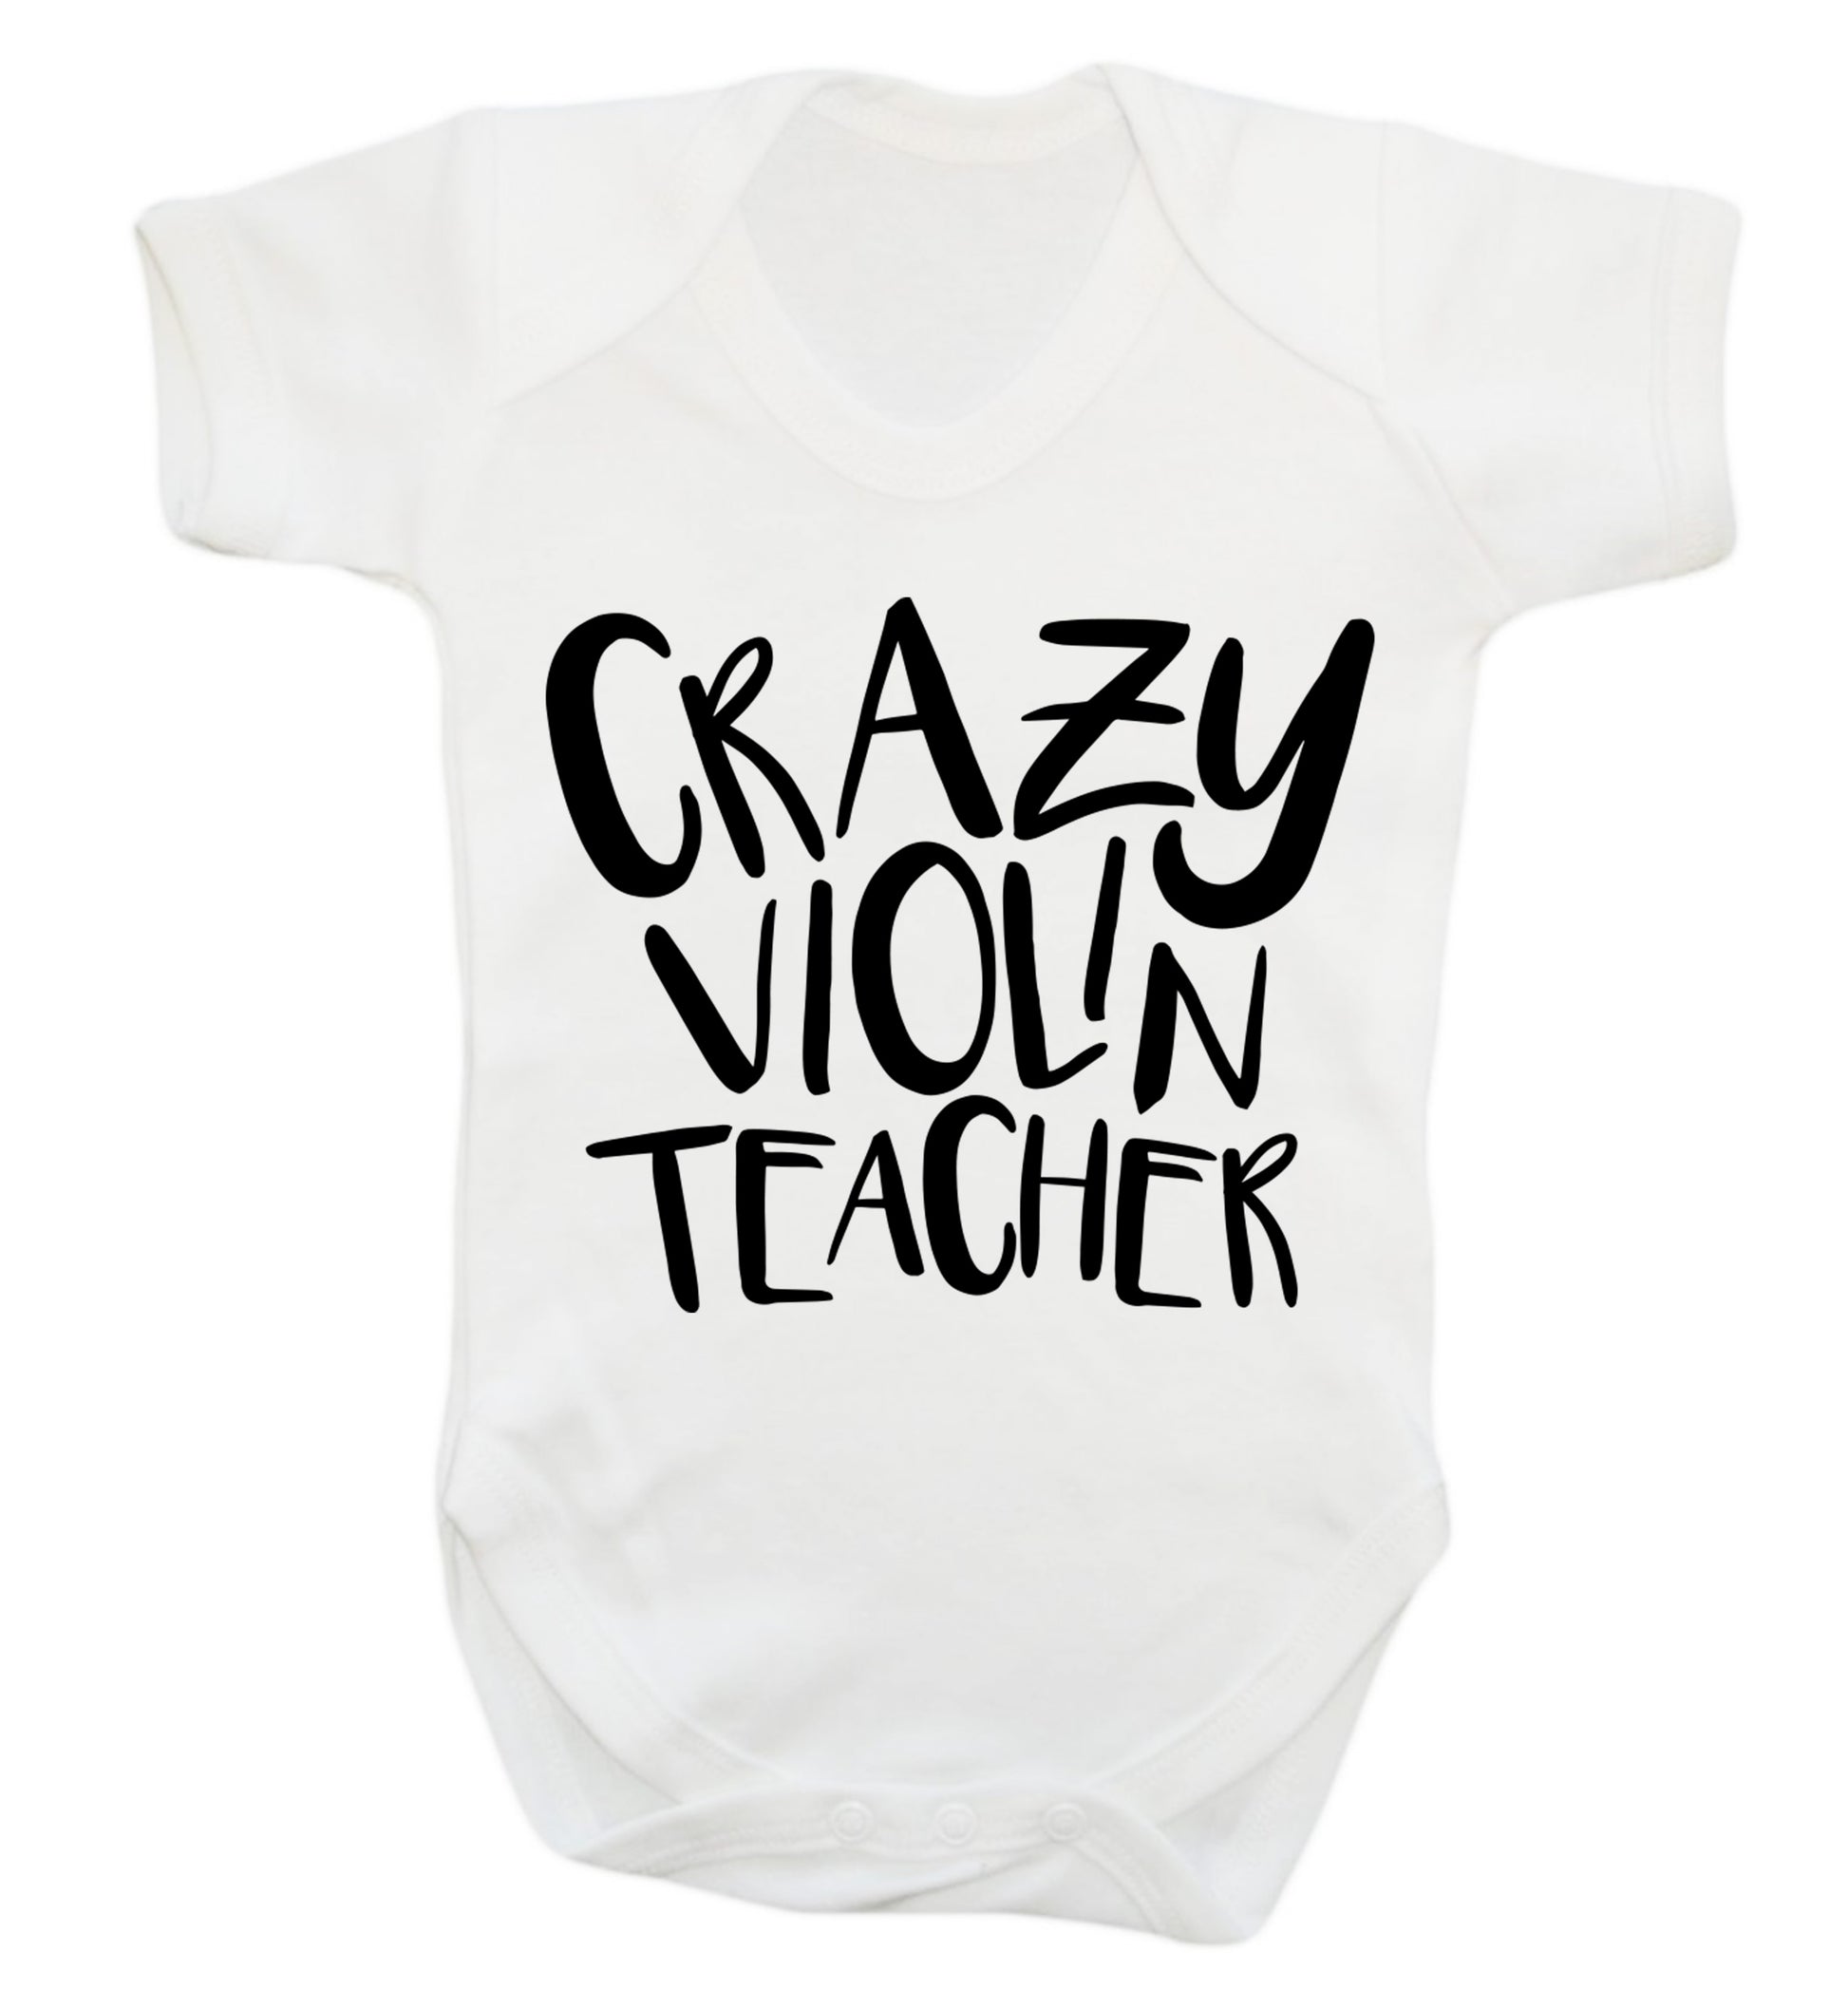 Crazy violin teacher Baby Vest white 18-24 months